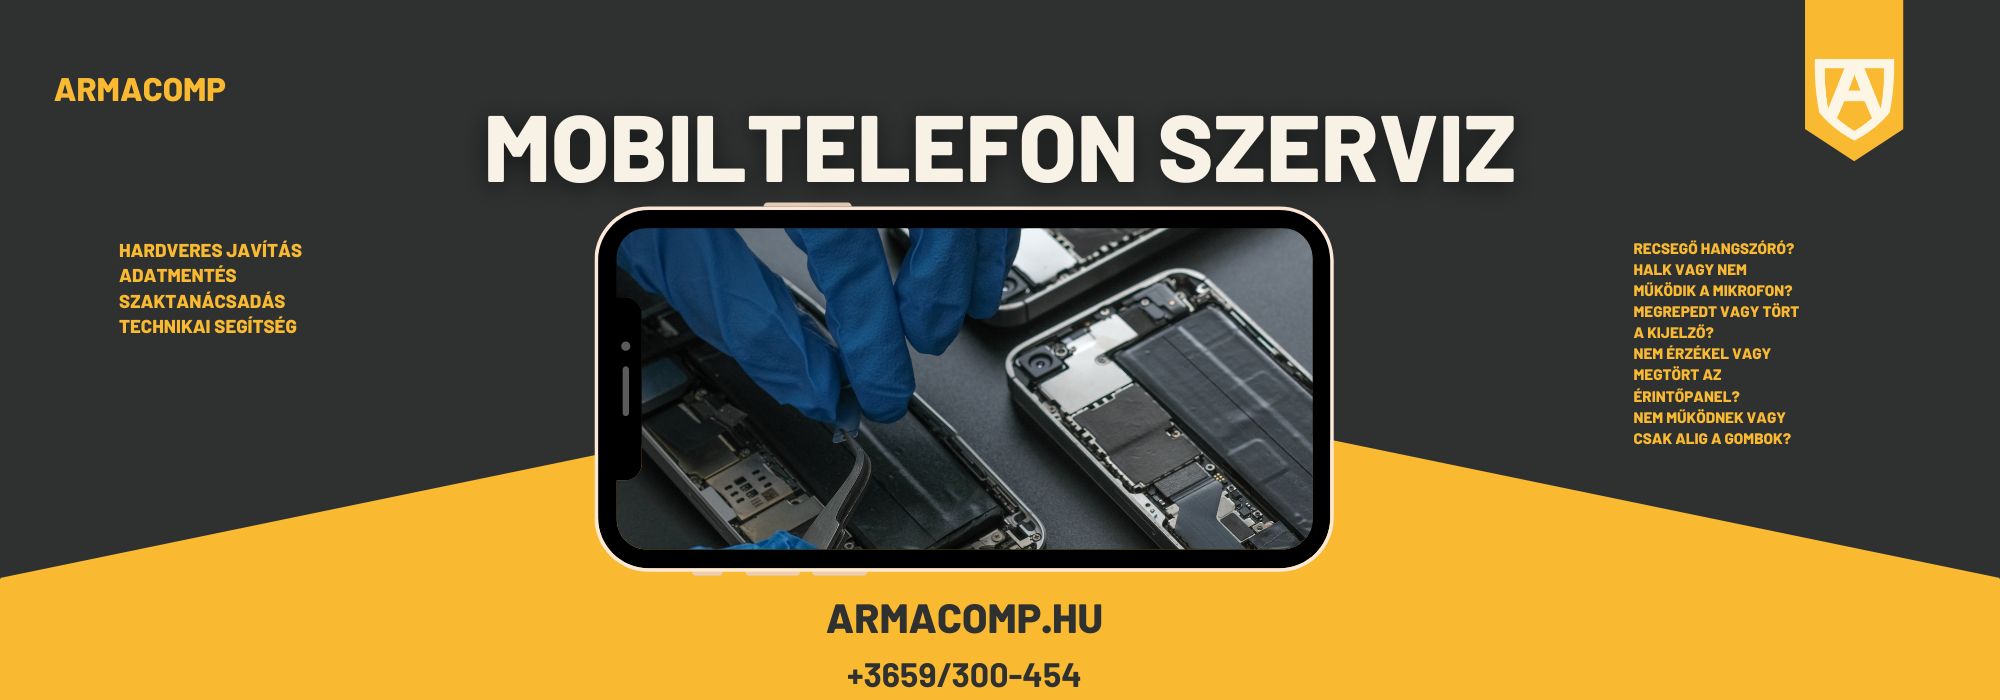  - Armacomp Számítástechnika és Mobil szerviz